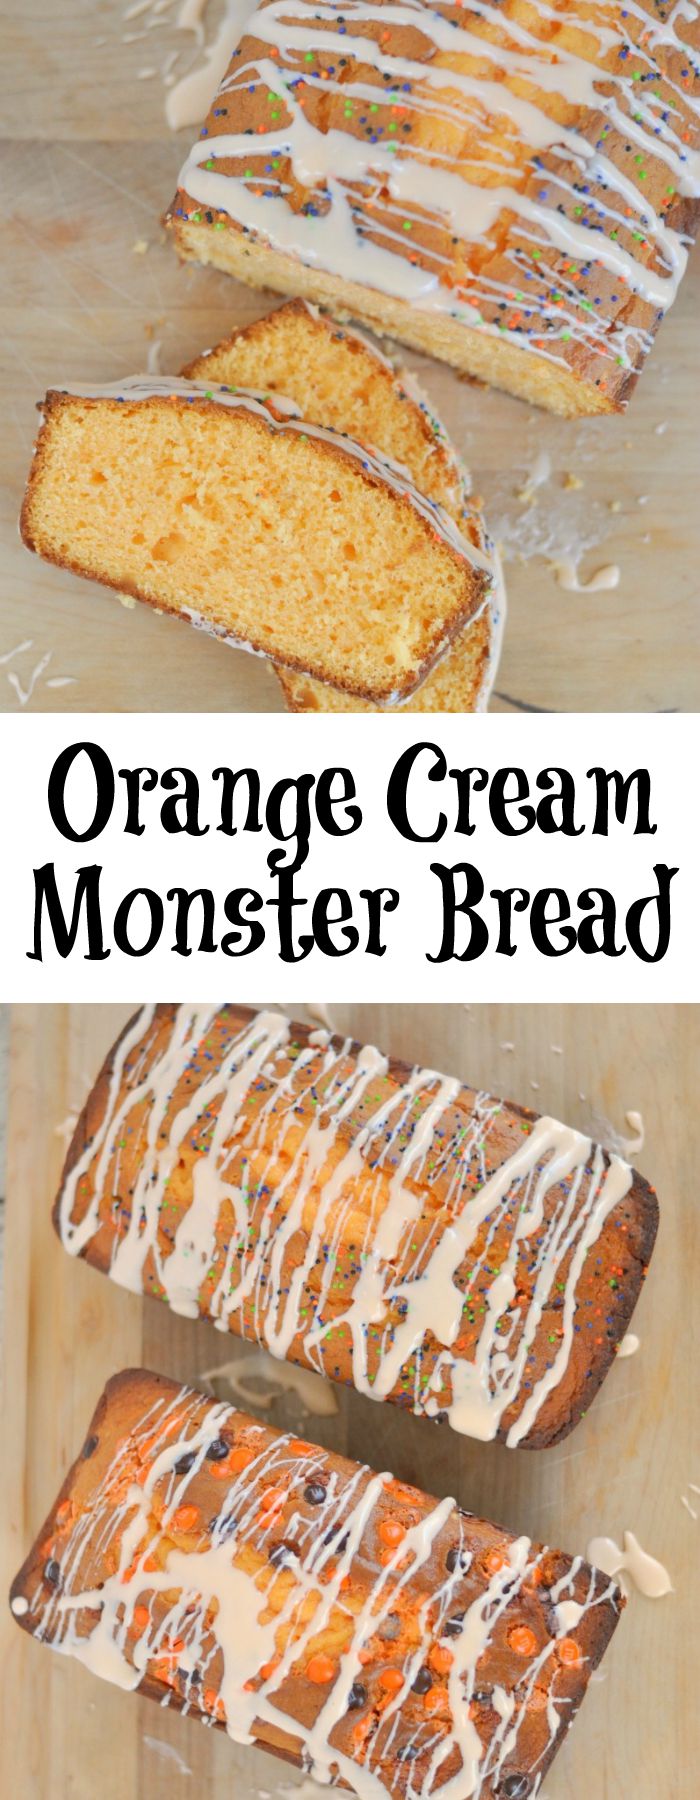 Orange Cream Monster Bread